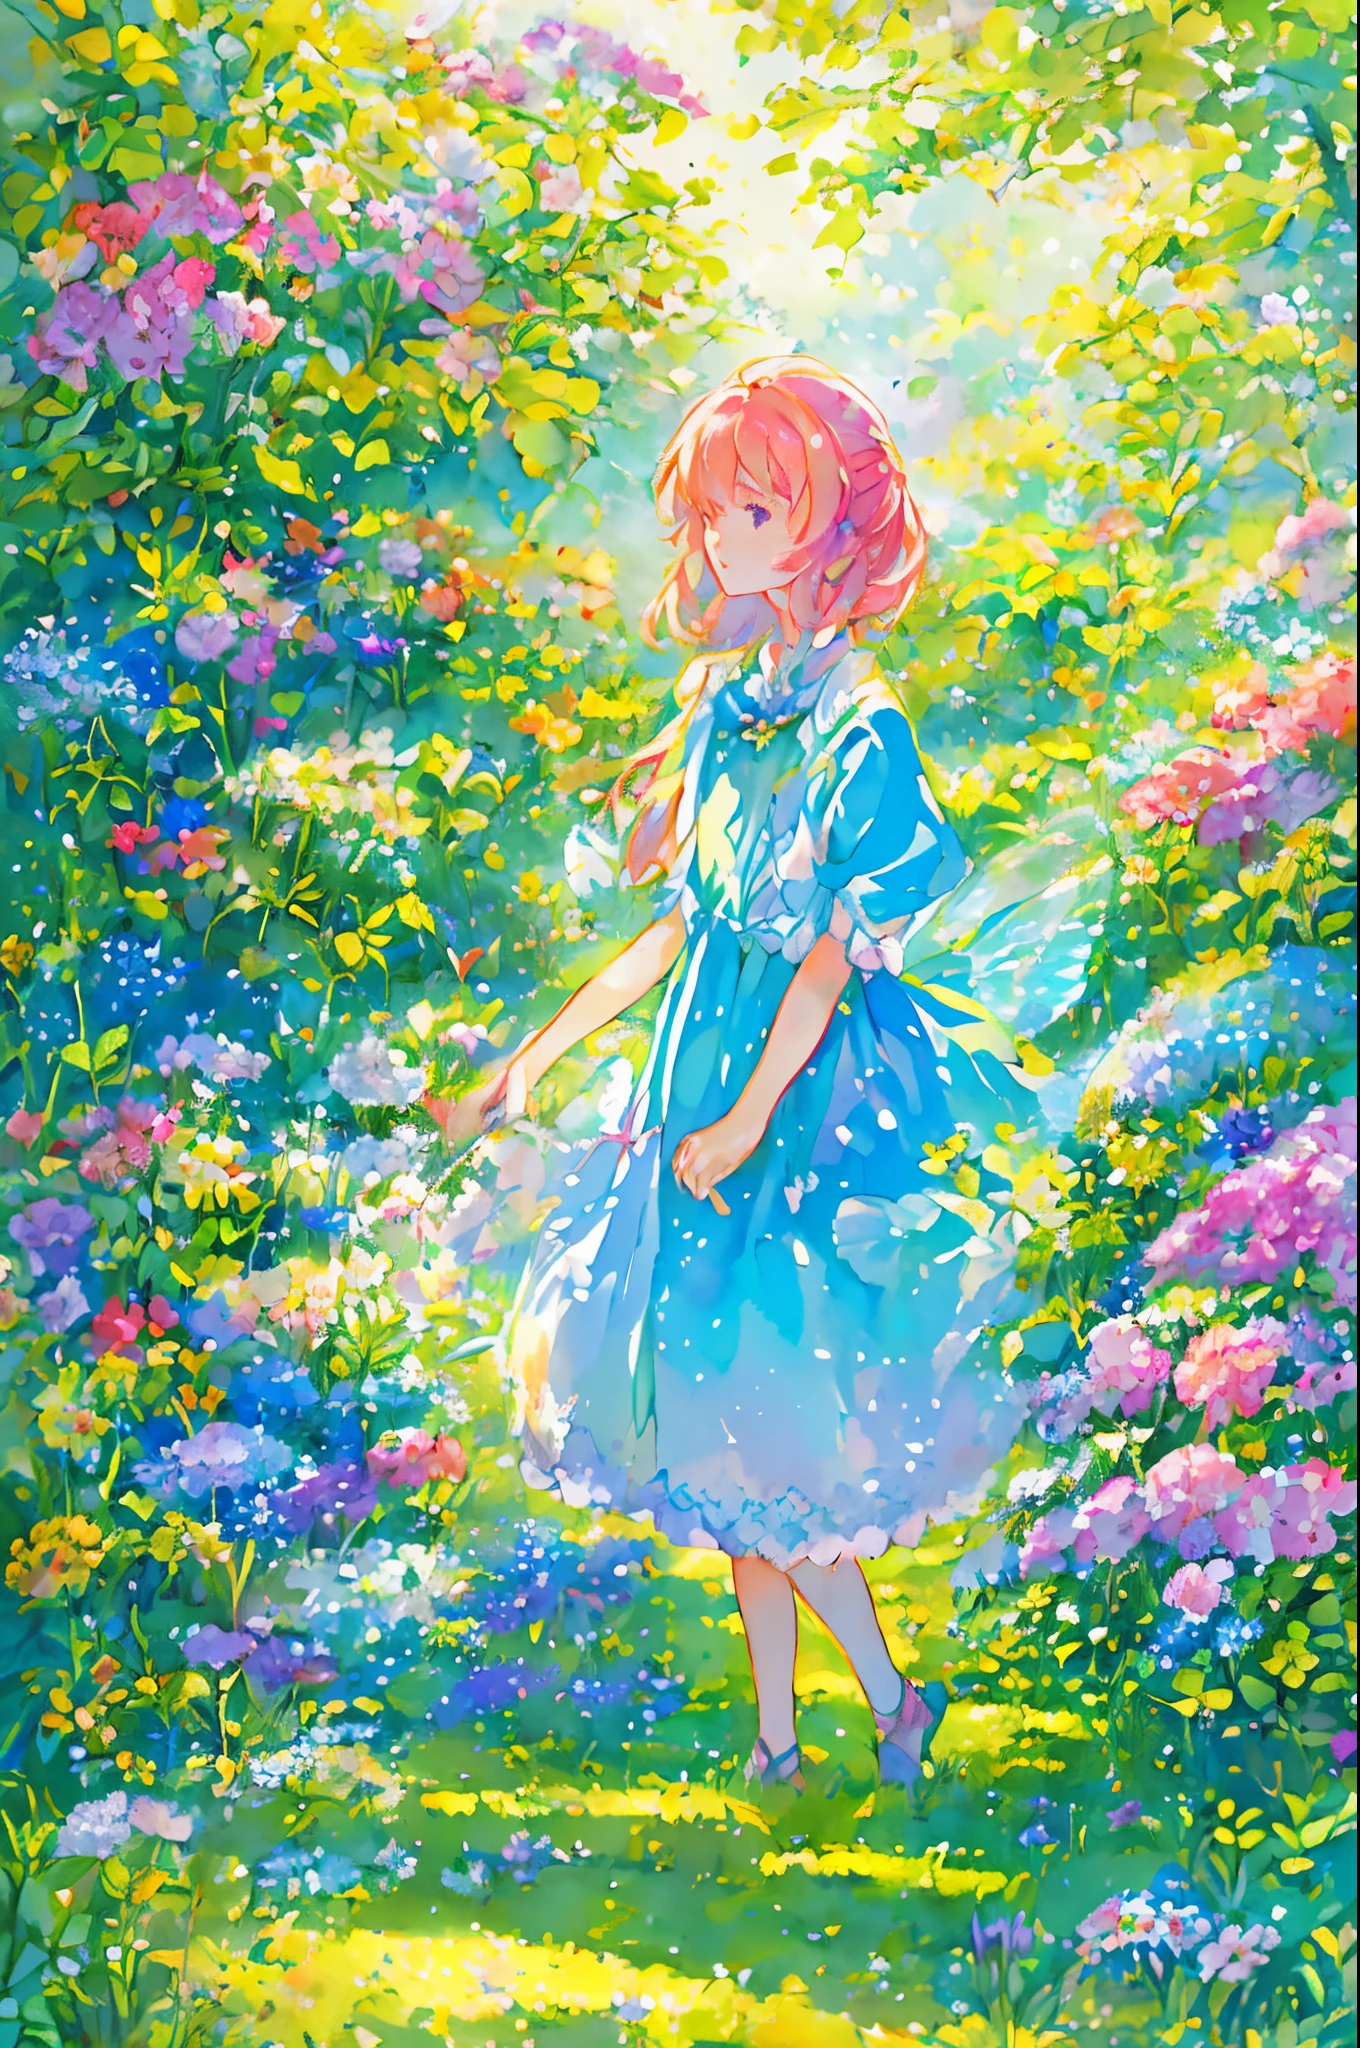 요정 의상을 입은 아름다운 소녀, 꽃과 나비에 둘러싸여. 콘텐츠: 수채화 그림. 스타일: 변덕스럽고 섬세함, 동화책에 나오는 삽화처럼.